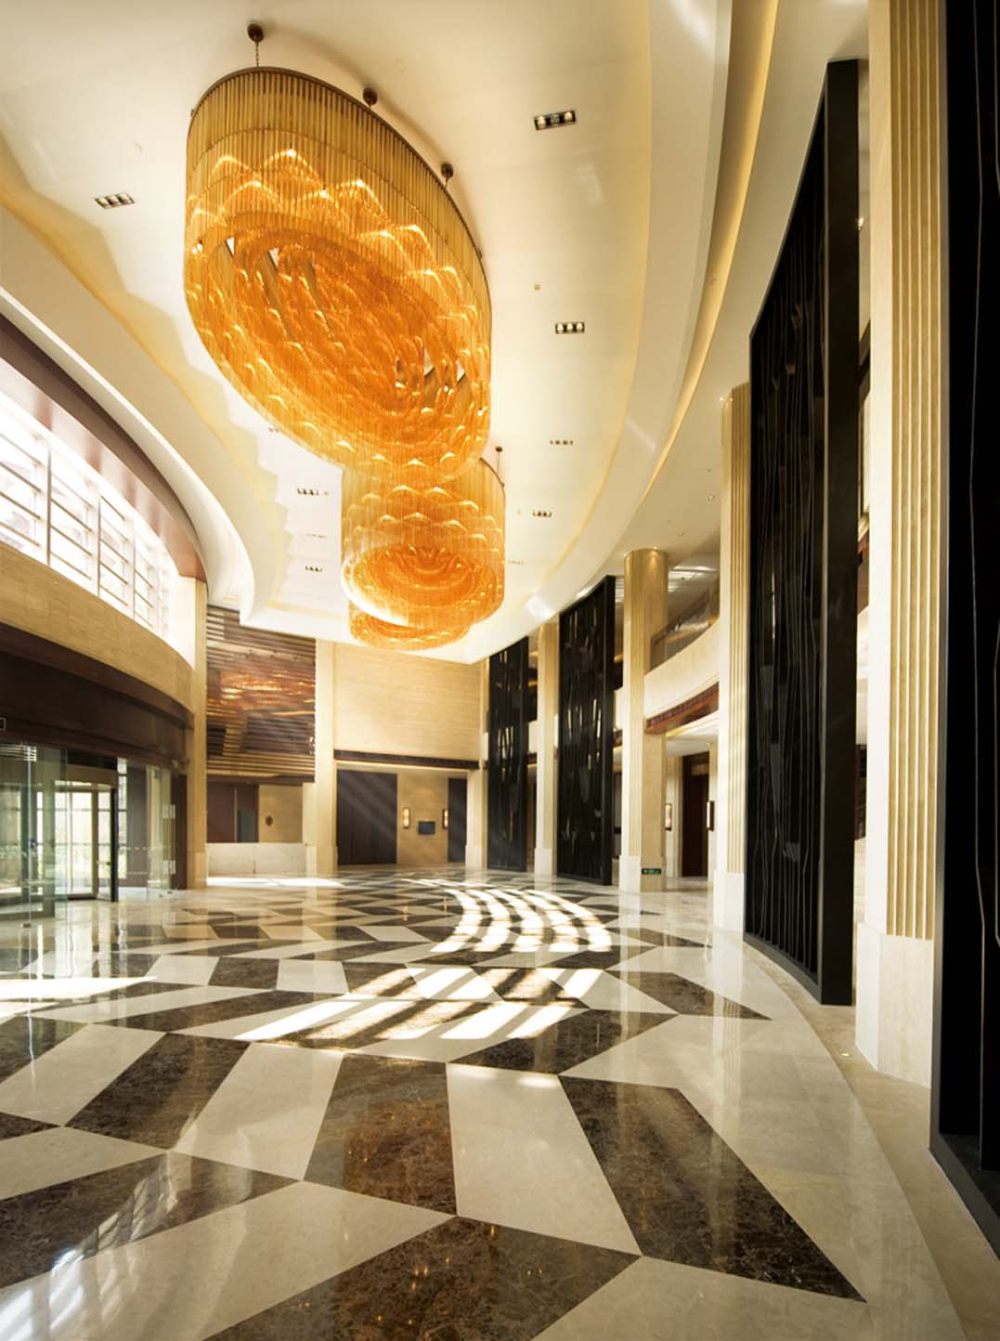 无锡逸林希尔顿酒店 Wuxi Double Tree Hotel_Details 02.jpg